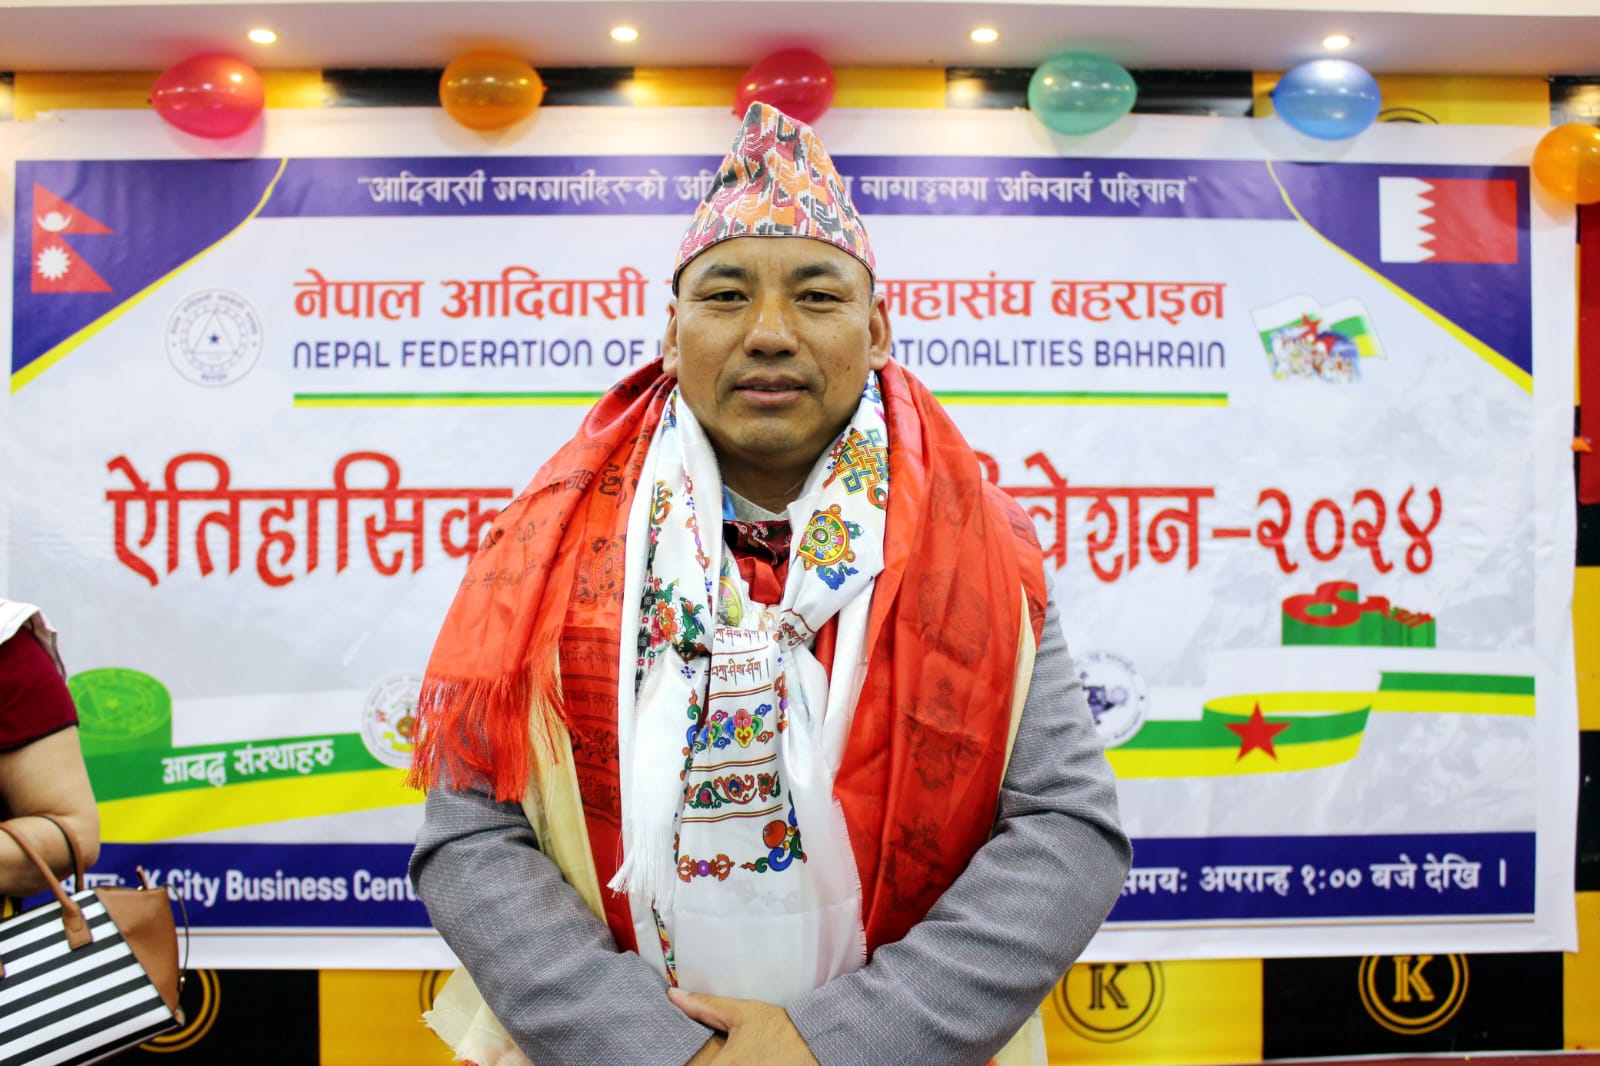 नेपाल आदिवासी जनजाती महासंघ बहराईनको चौंथो महाधिवेशन सम्पन्न, अध्यक्षमा तुम्वापो निर्वाचित